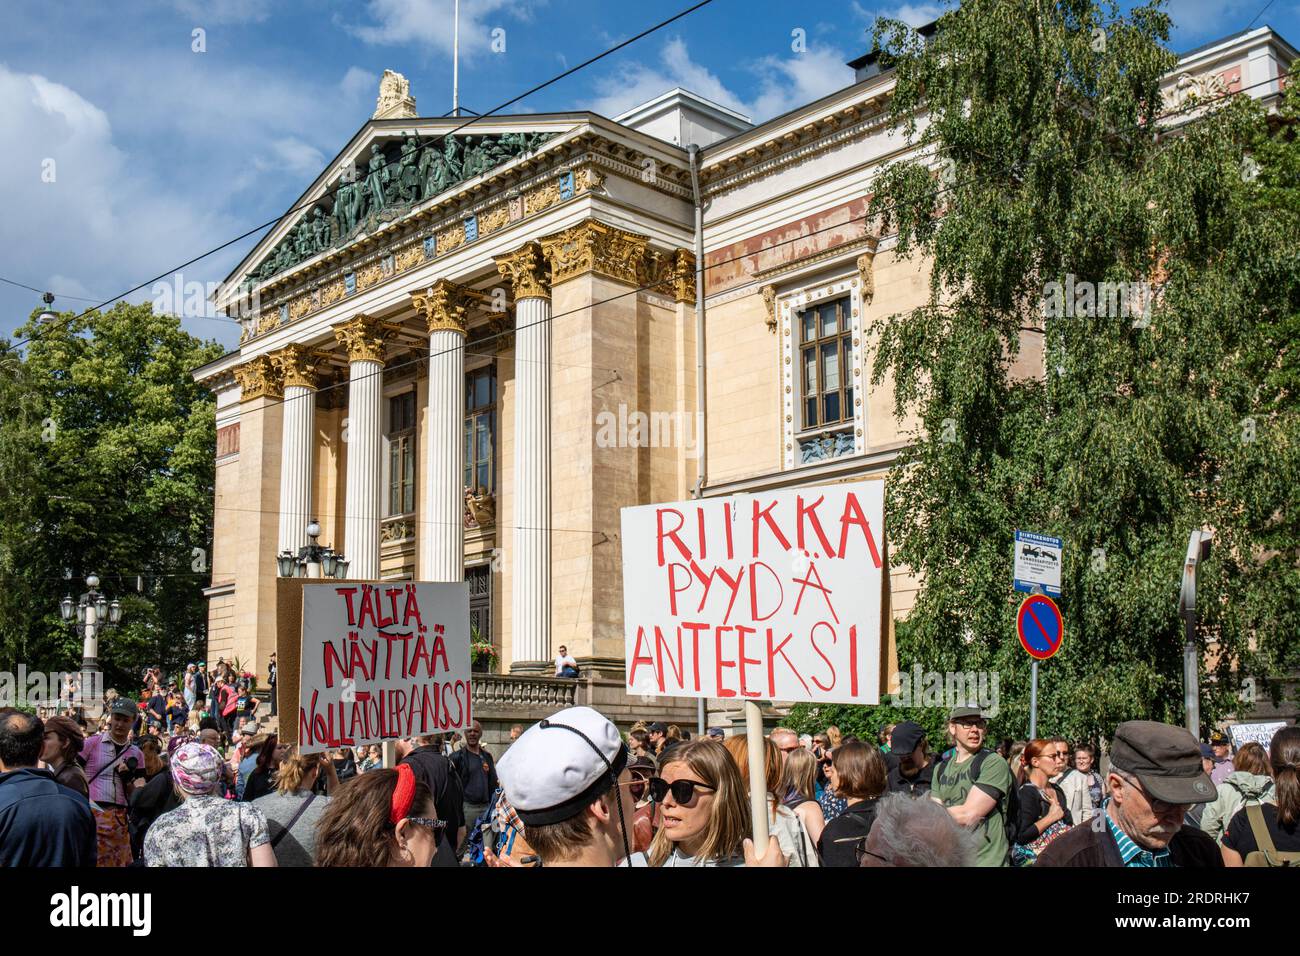 Riikka pyydä anteeksi. Manifestante riunito davanti a Säätytalo davanti a Nollatoleranssi! manifestazione contro i ministri di estrema destra del governo. Foto Stock